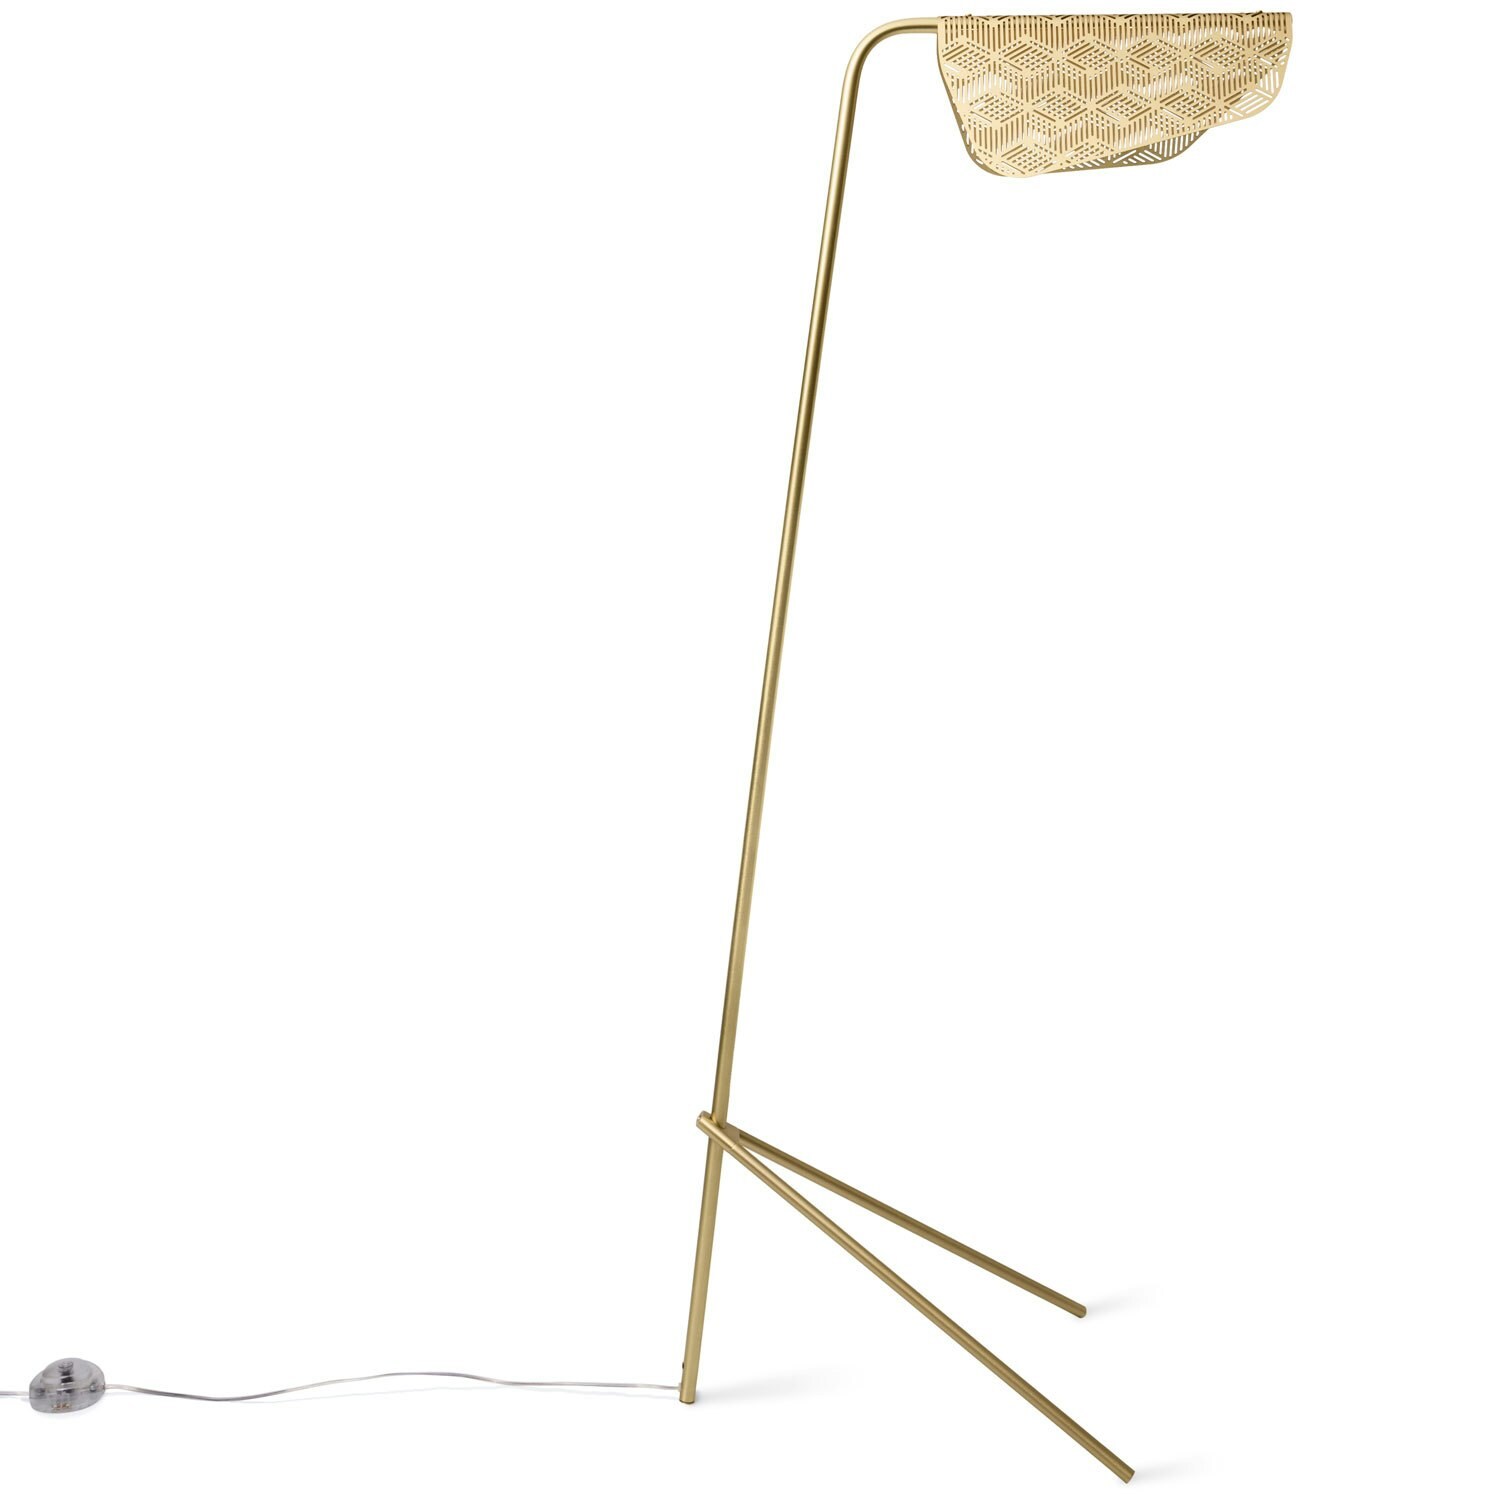 Precise Floor Lamp, Brass Finish - House Doctor @ RoyalDesign